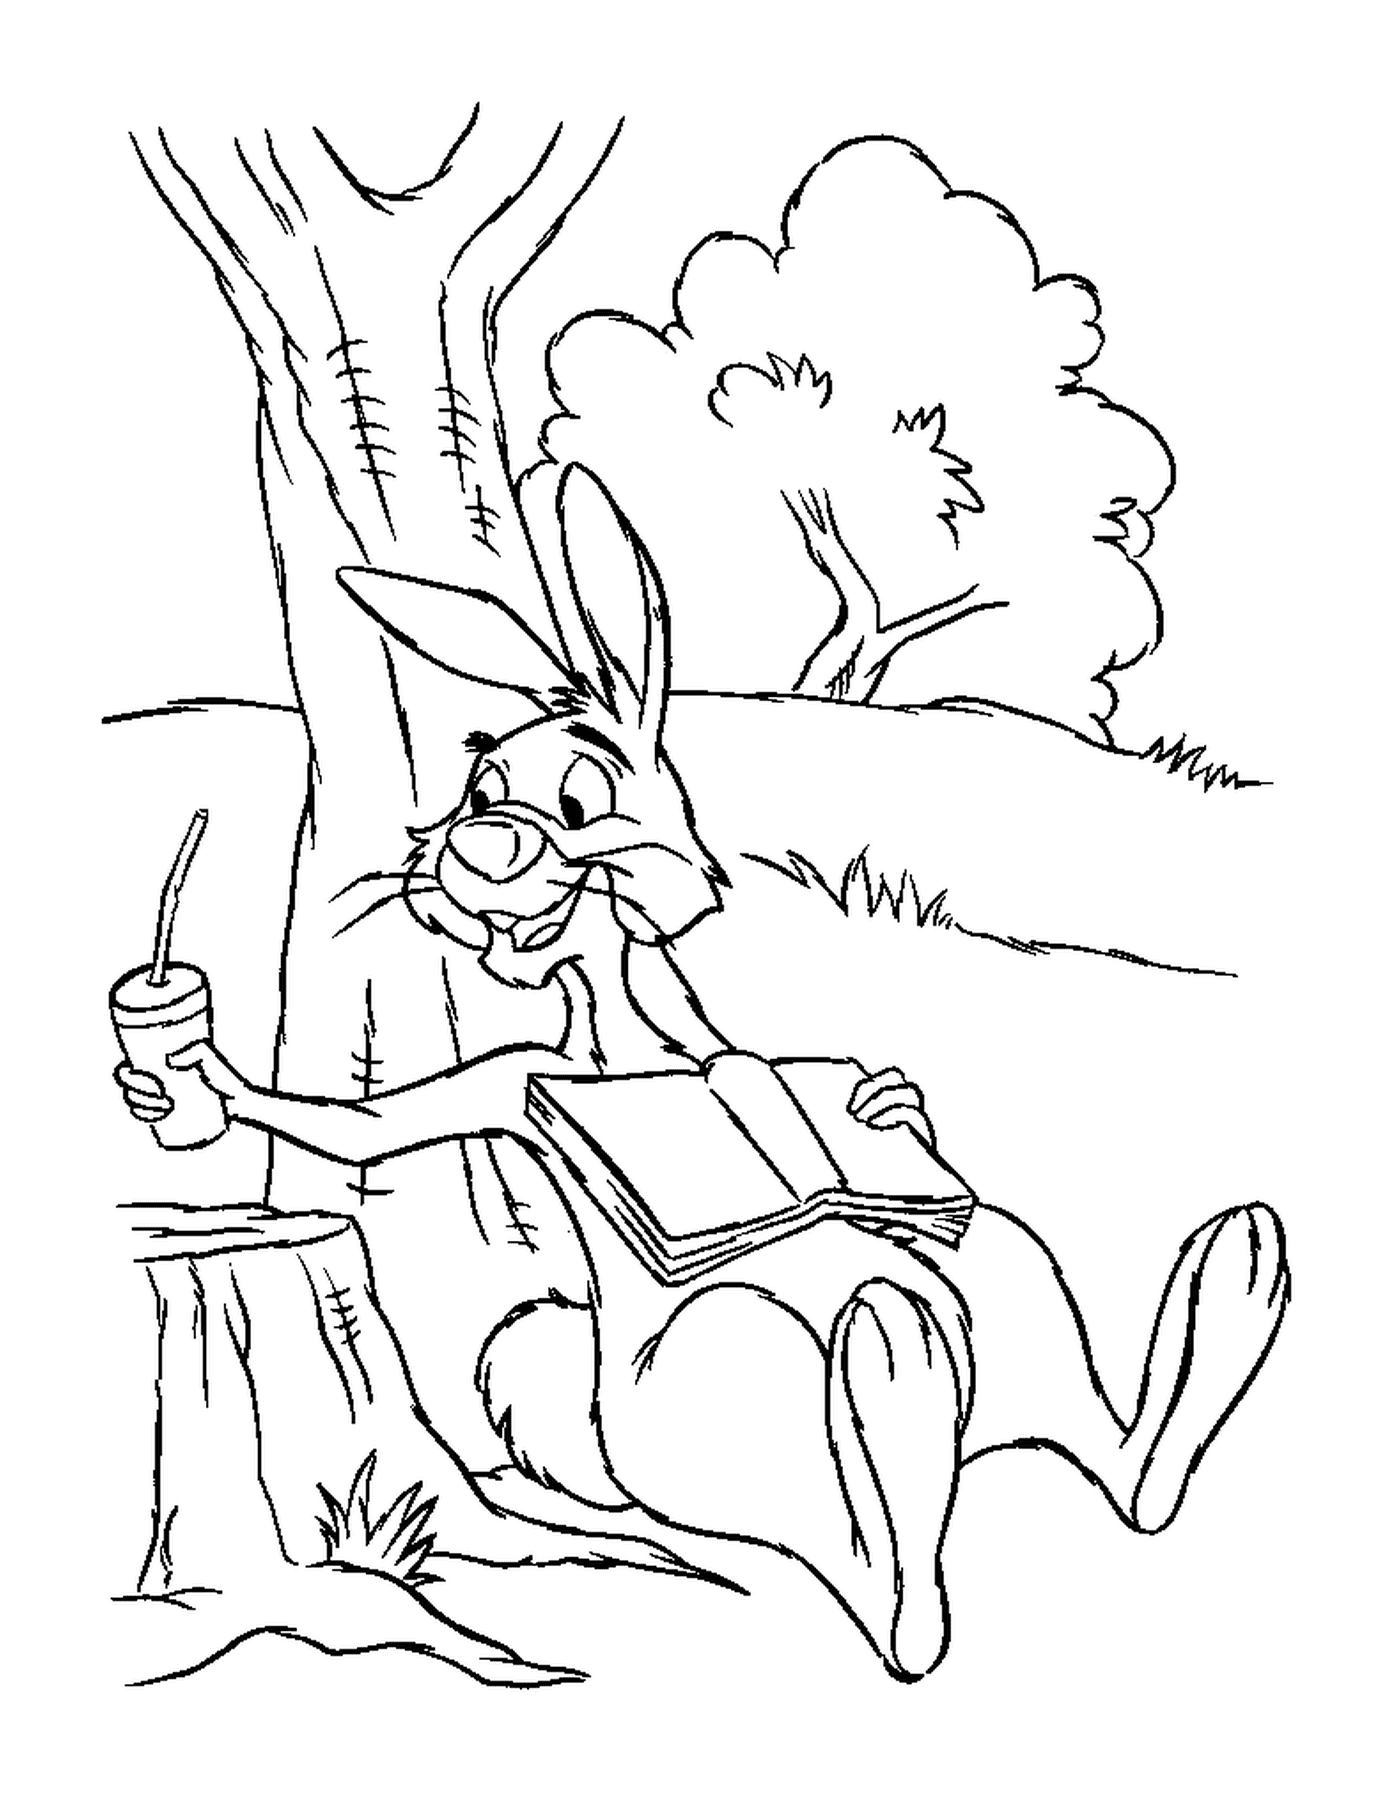  Ein Kaninchen sitzt auf einem Stumpf in der Nähe eines Baumes mit Karottensaft 